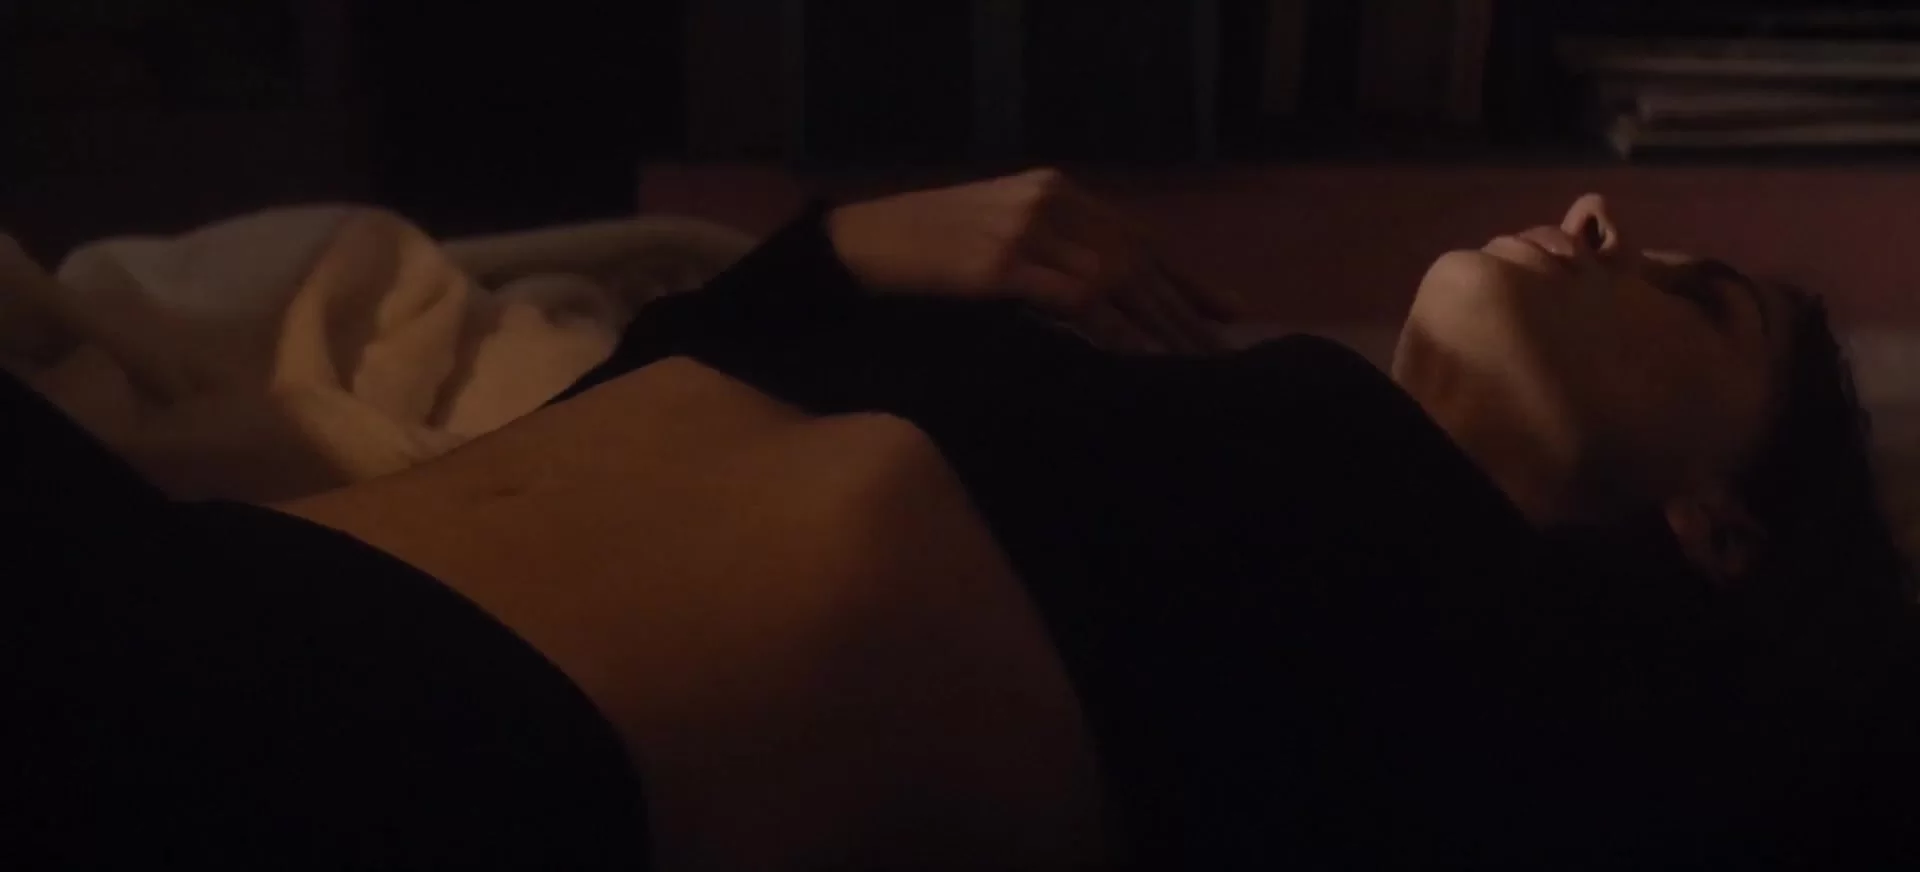 Housewife - Masturbation Scenes in Movies erotic sex scenes pic